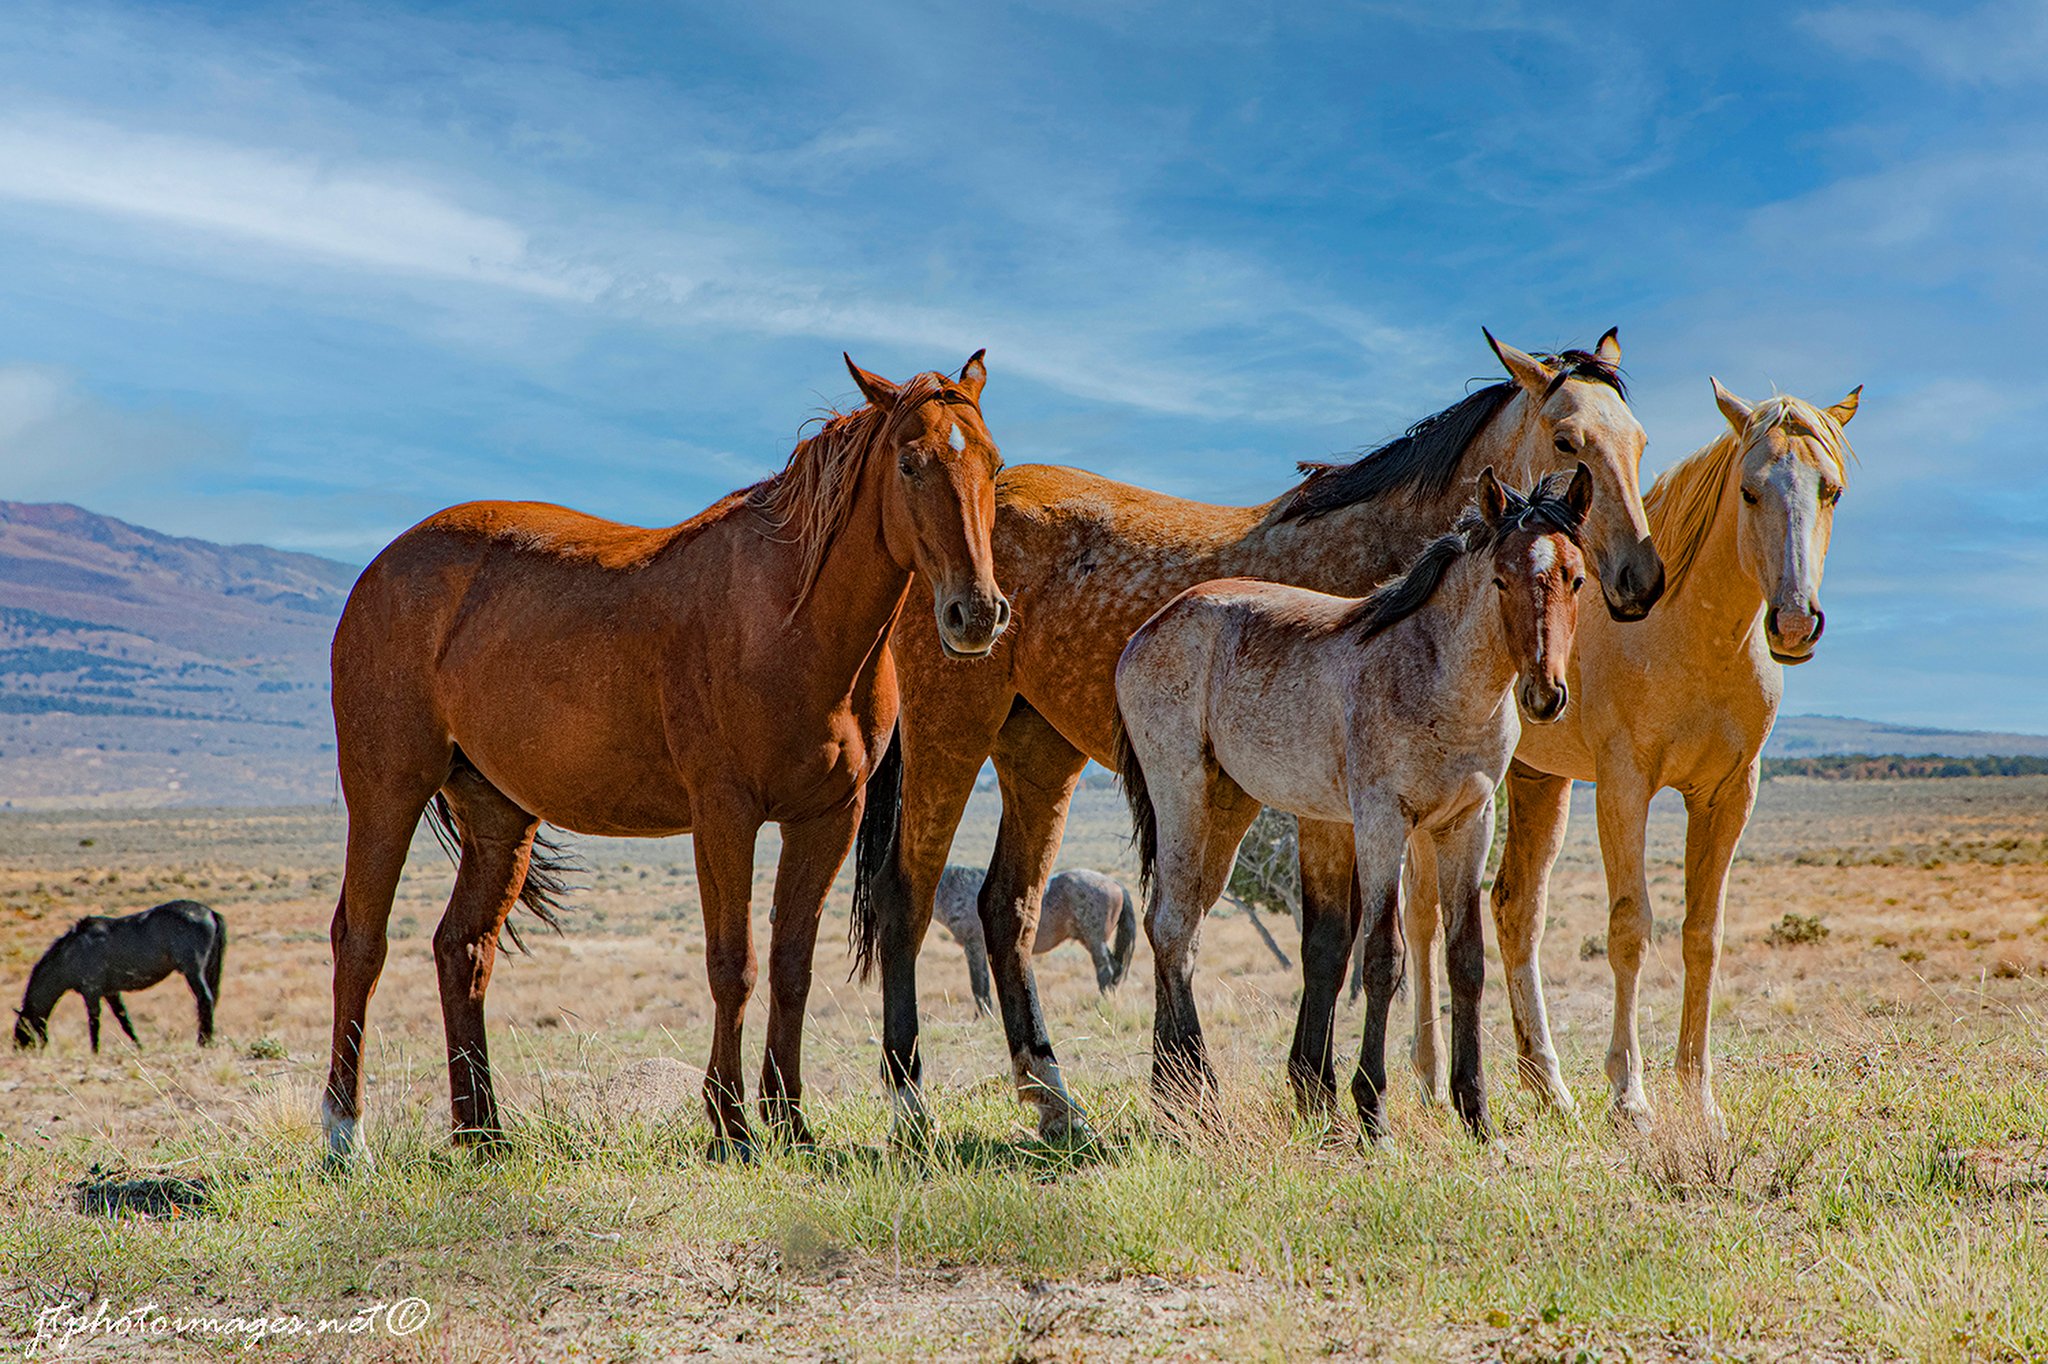 whittaker_Onaqui Wild Mustangs Family Portrait_web.JPG